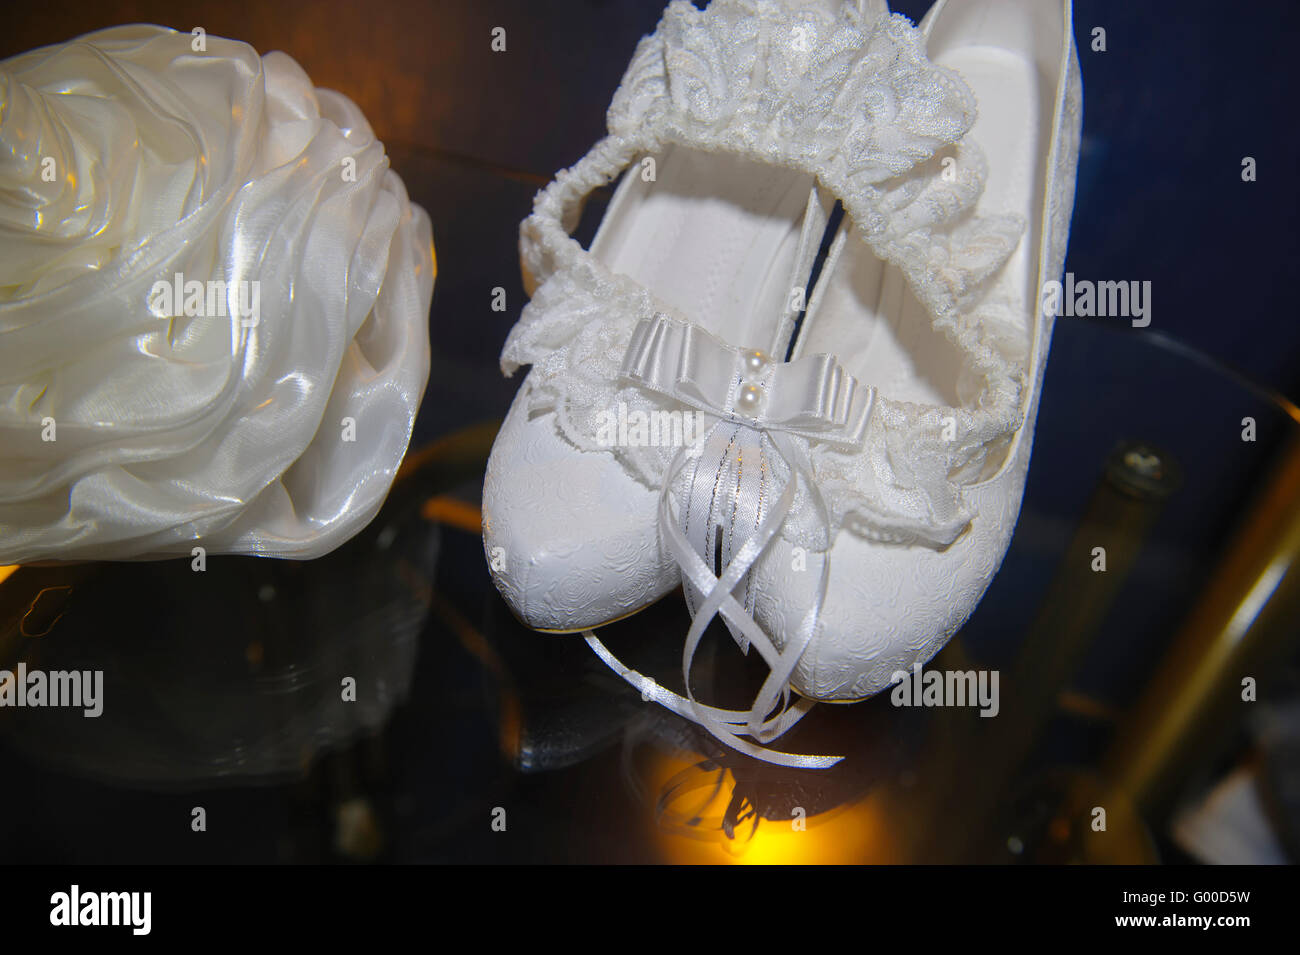 schöne weiße Braut Handtasche und Schuhe auf dem Tisch Stockfoto